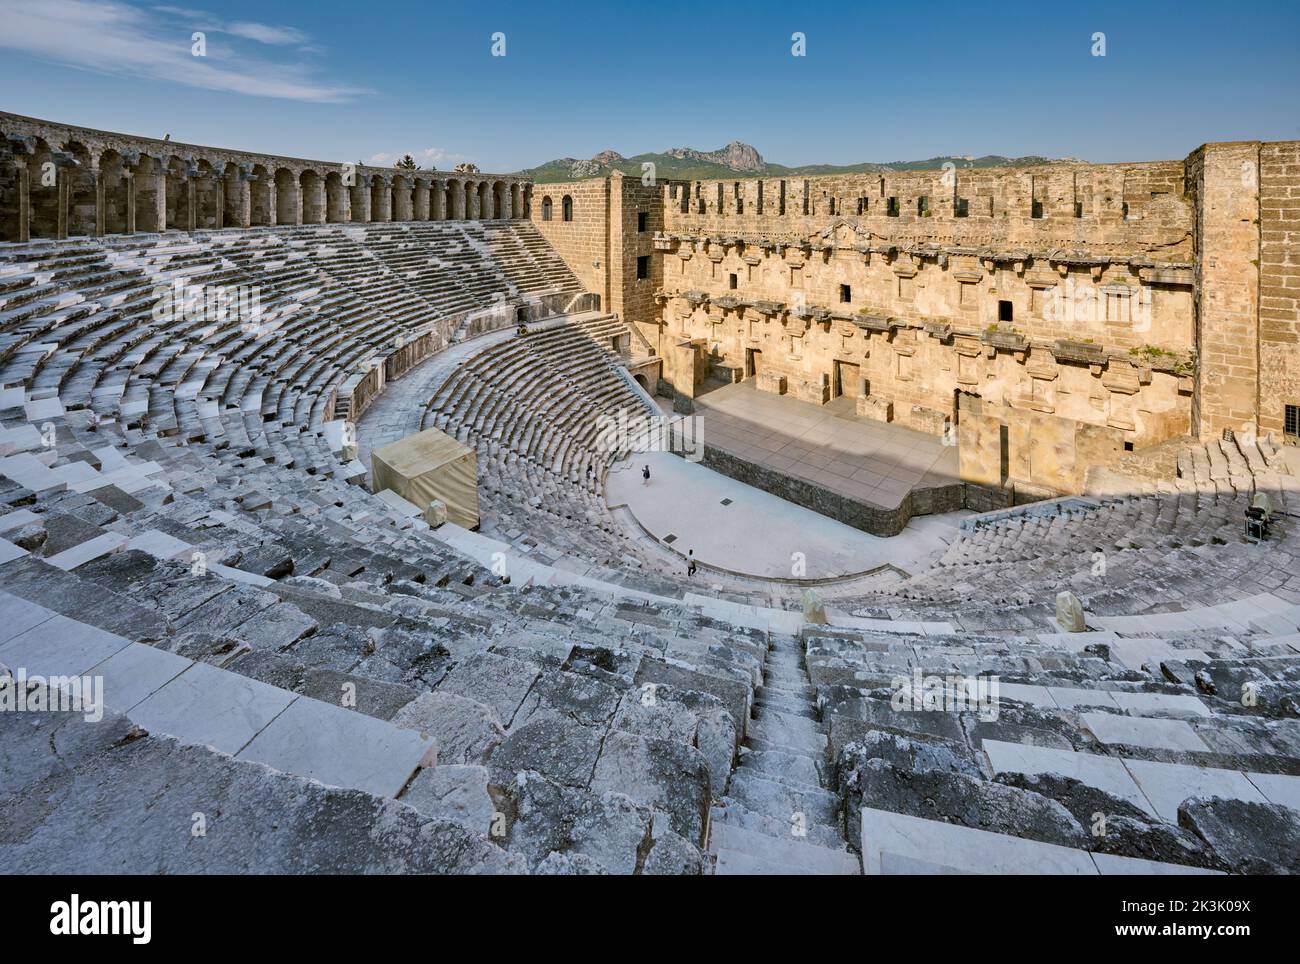 El antiguo teatro romano de Aspendos, la ciudad antigua de Aspendos, Antalya, Turquía Foto de stock